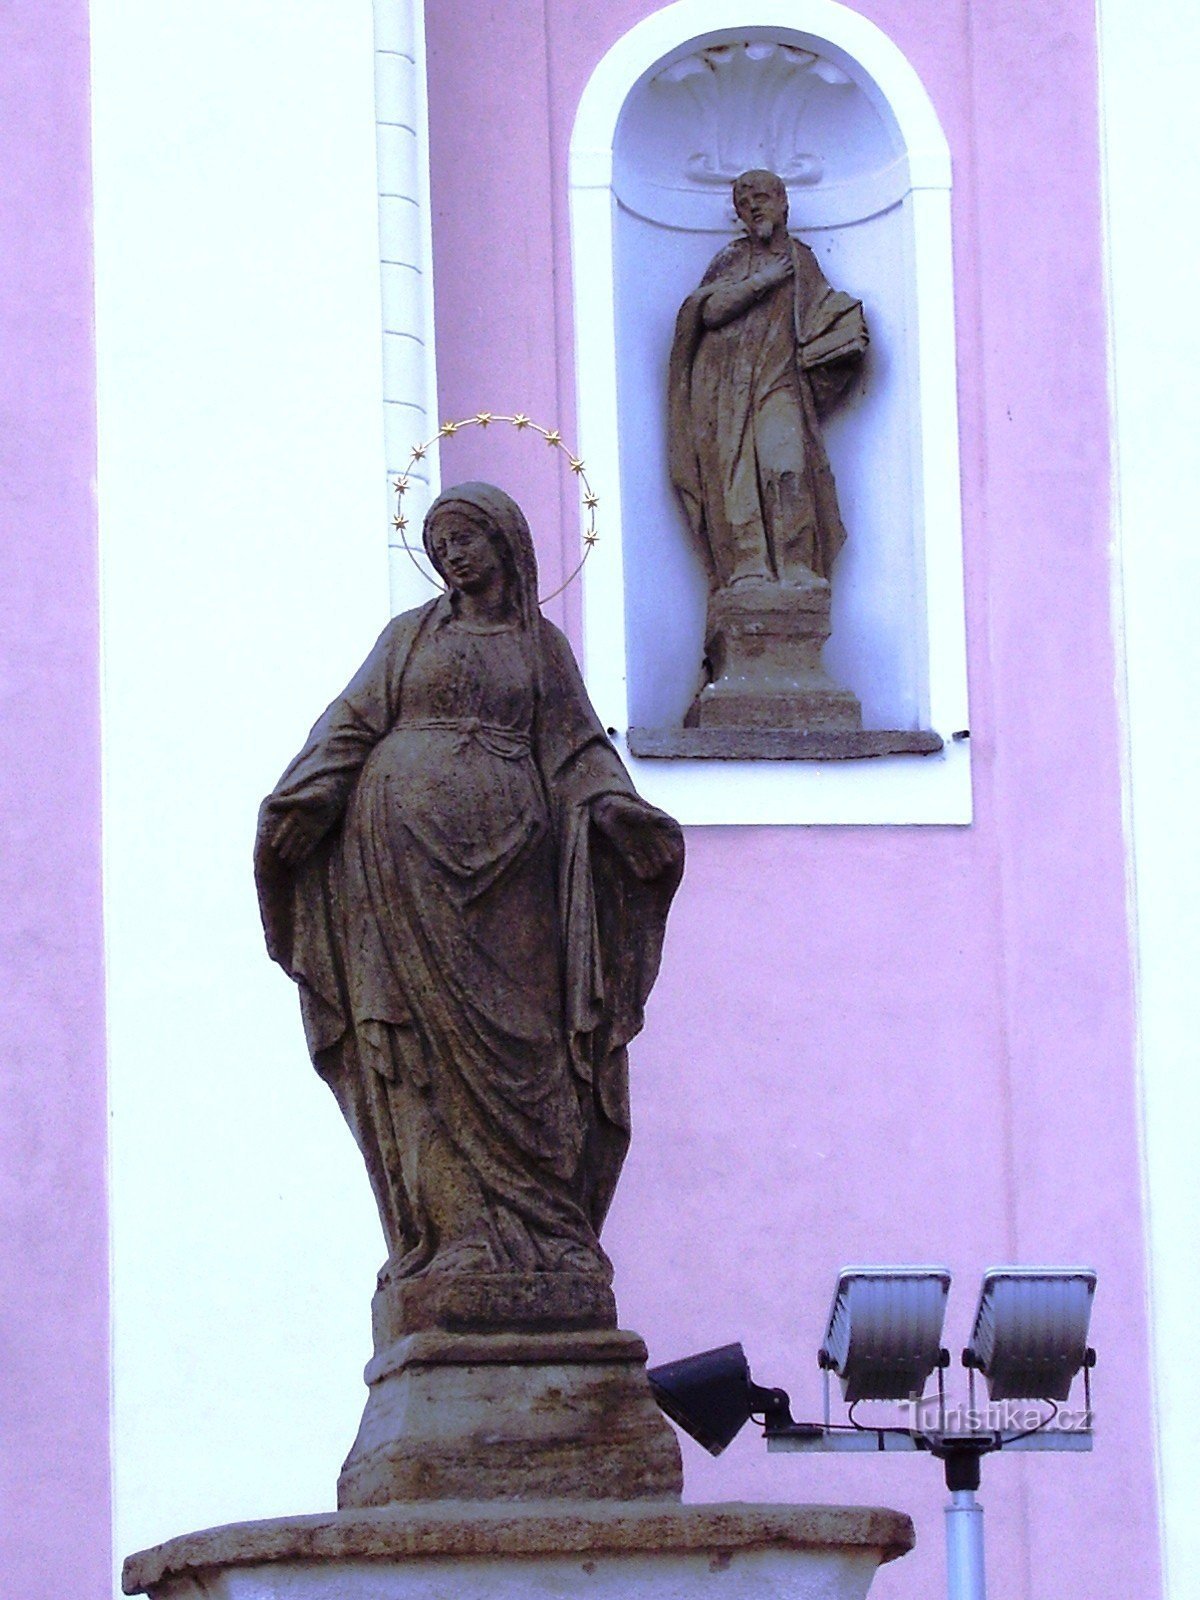 Nové Veselí - church and statues